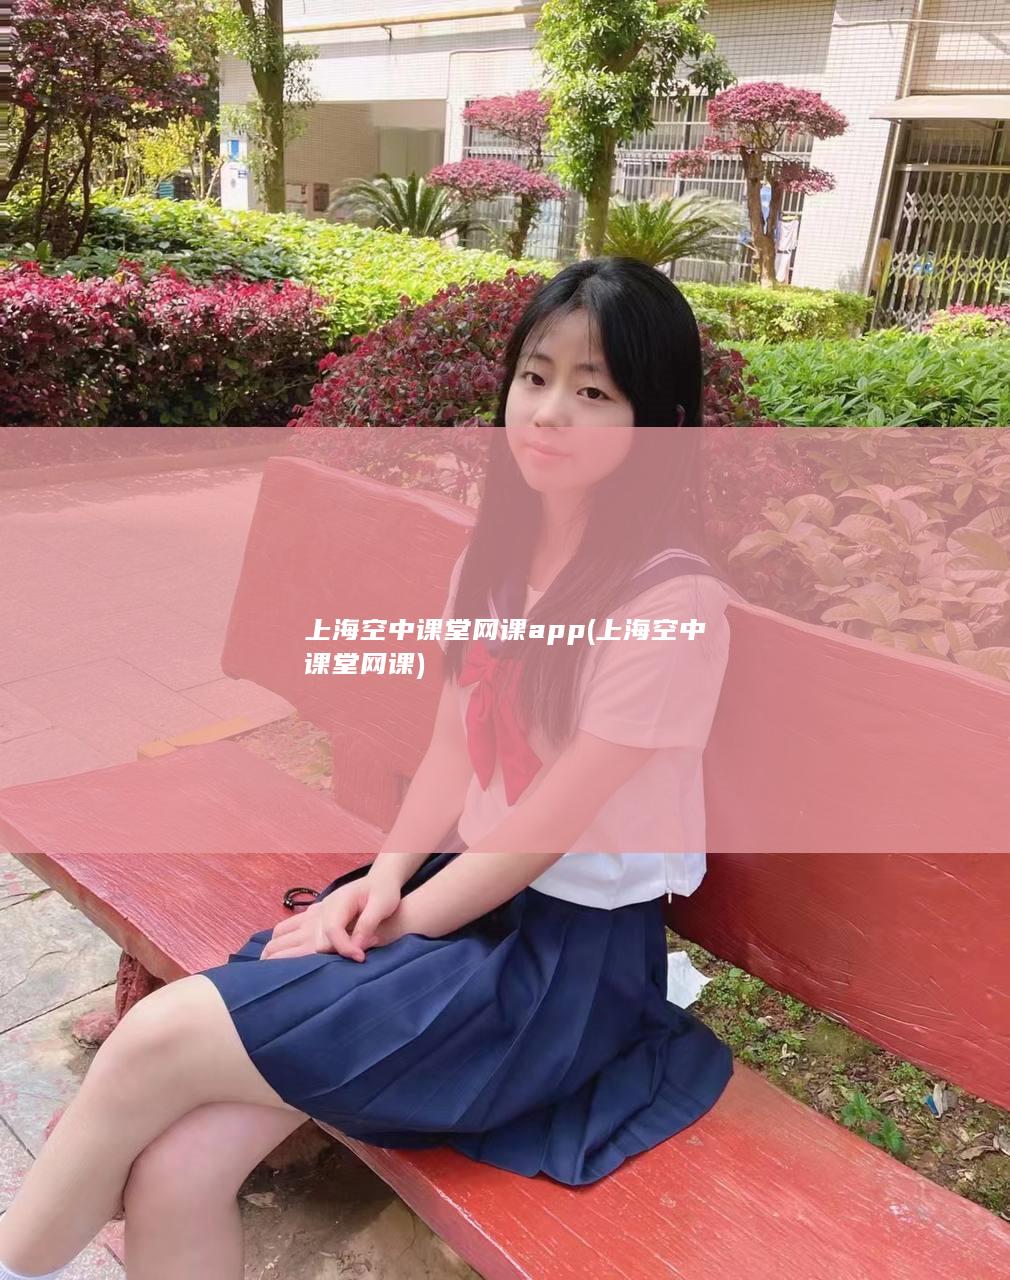 上海空中课堂网课app (上海空中课堂网课)